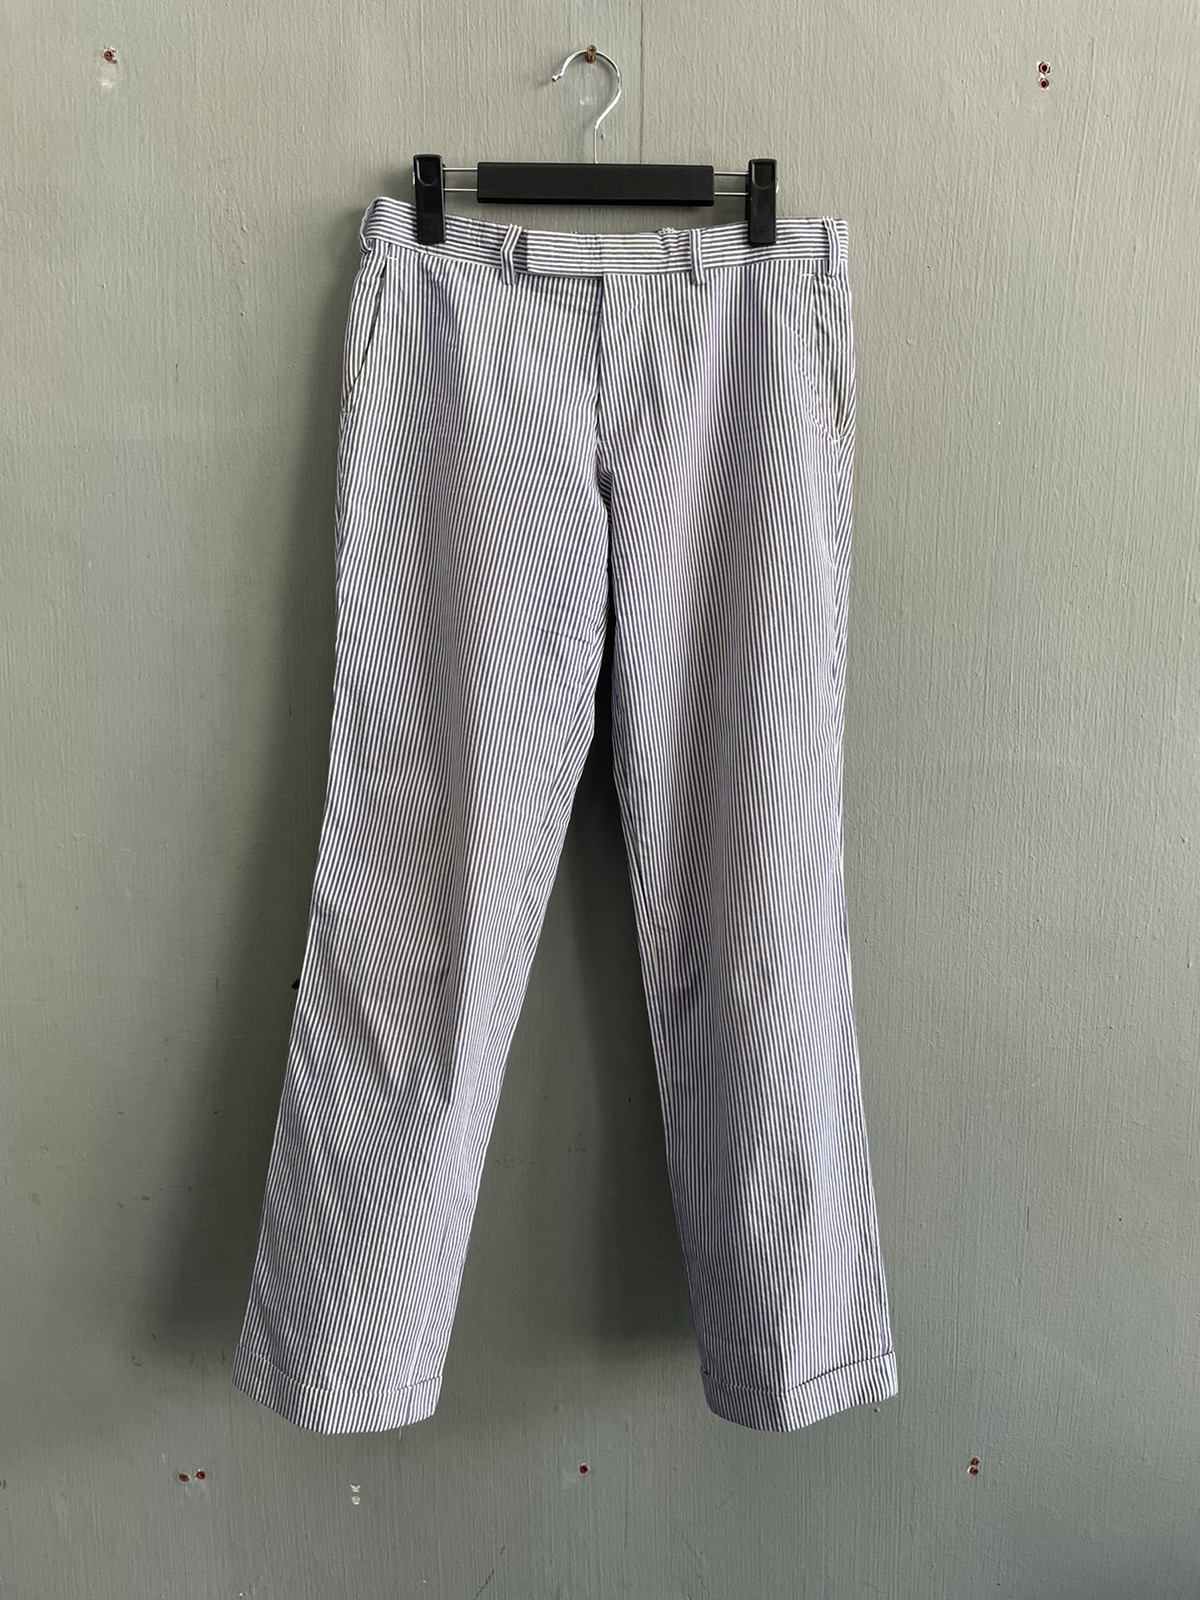 ‼️FINAL PRICE DROP‼️Maison Kitsune Stripe Casual Pants - 1